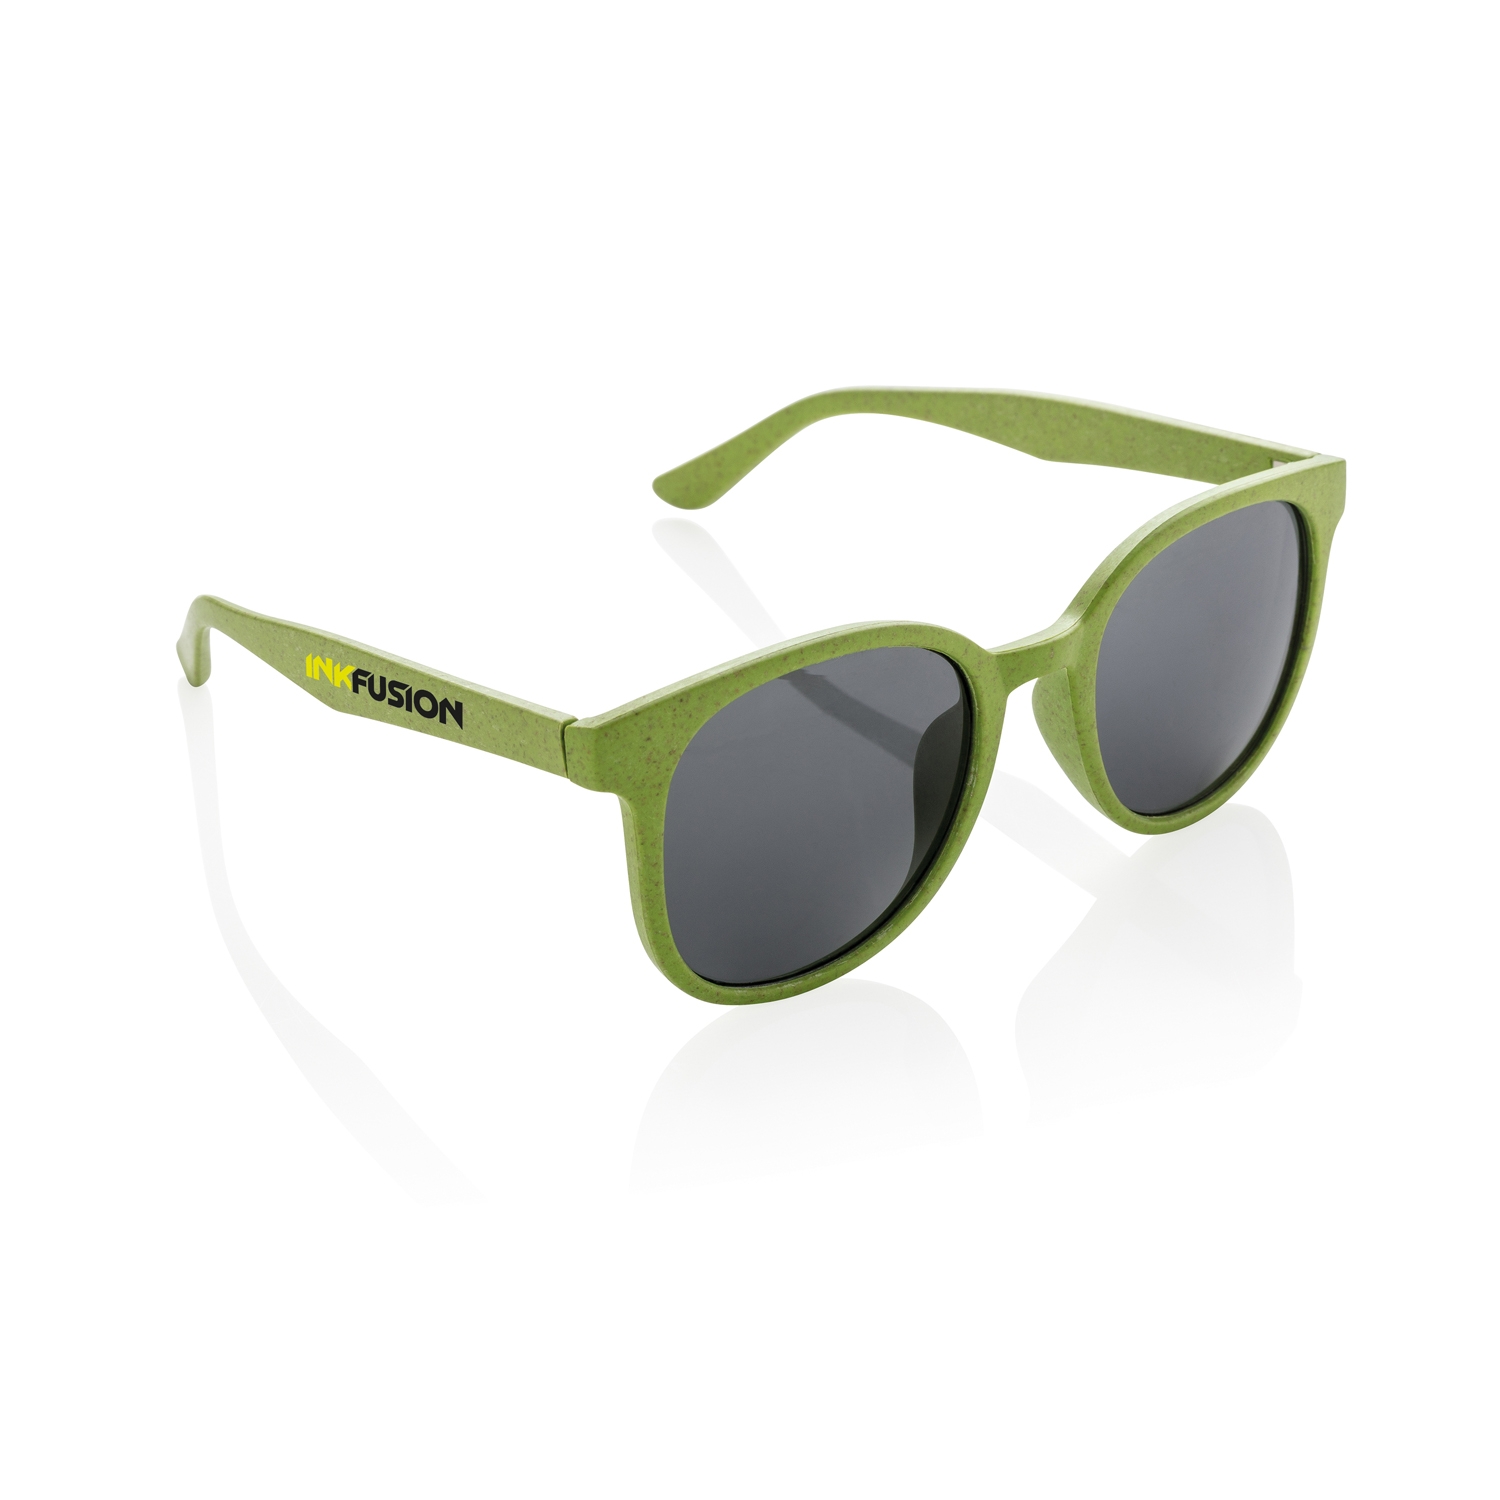 Солнцезащитные очки ECO, зеленый, волокно пшеничной соломы; pp